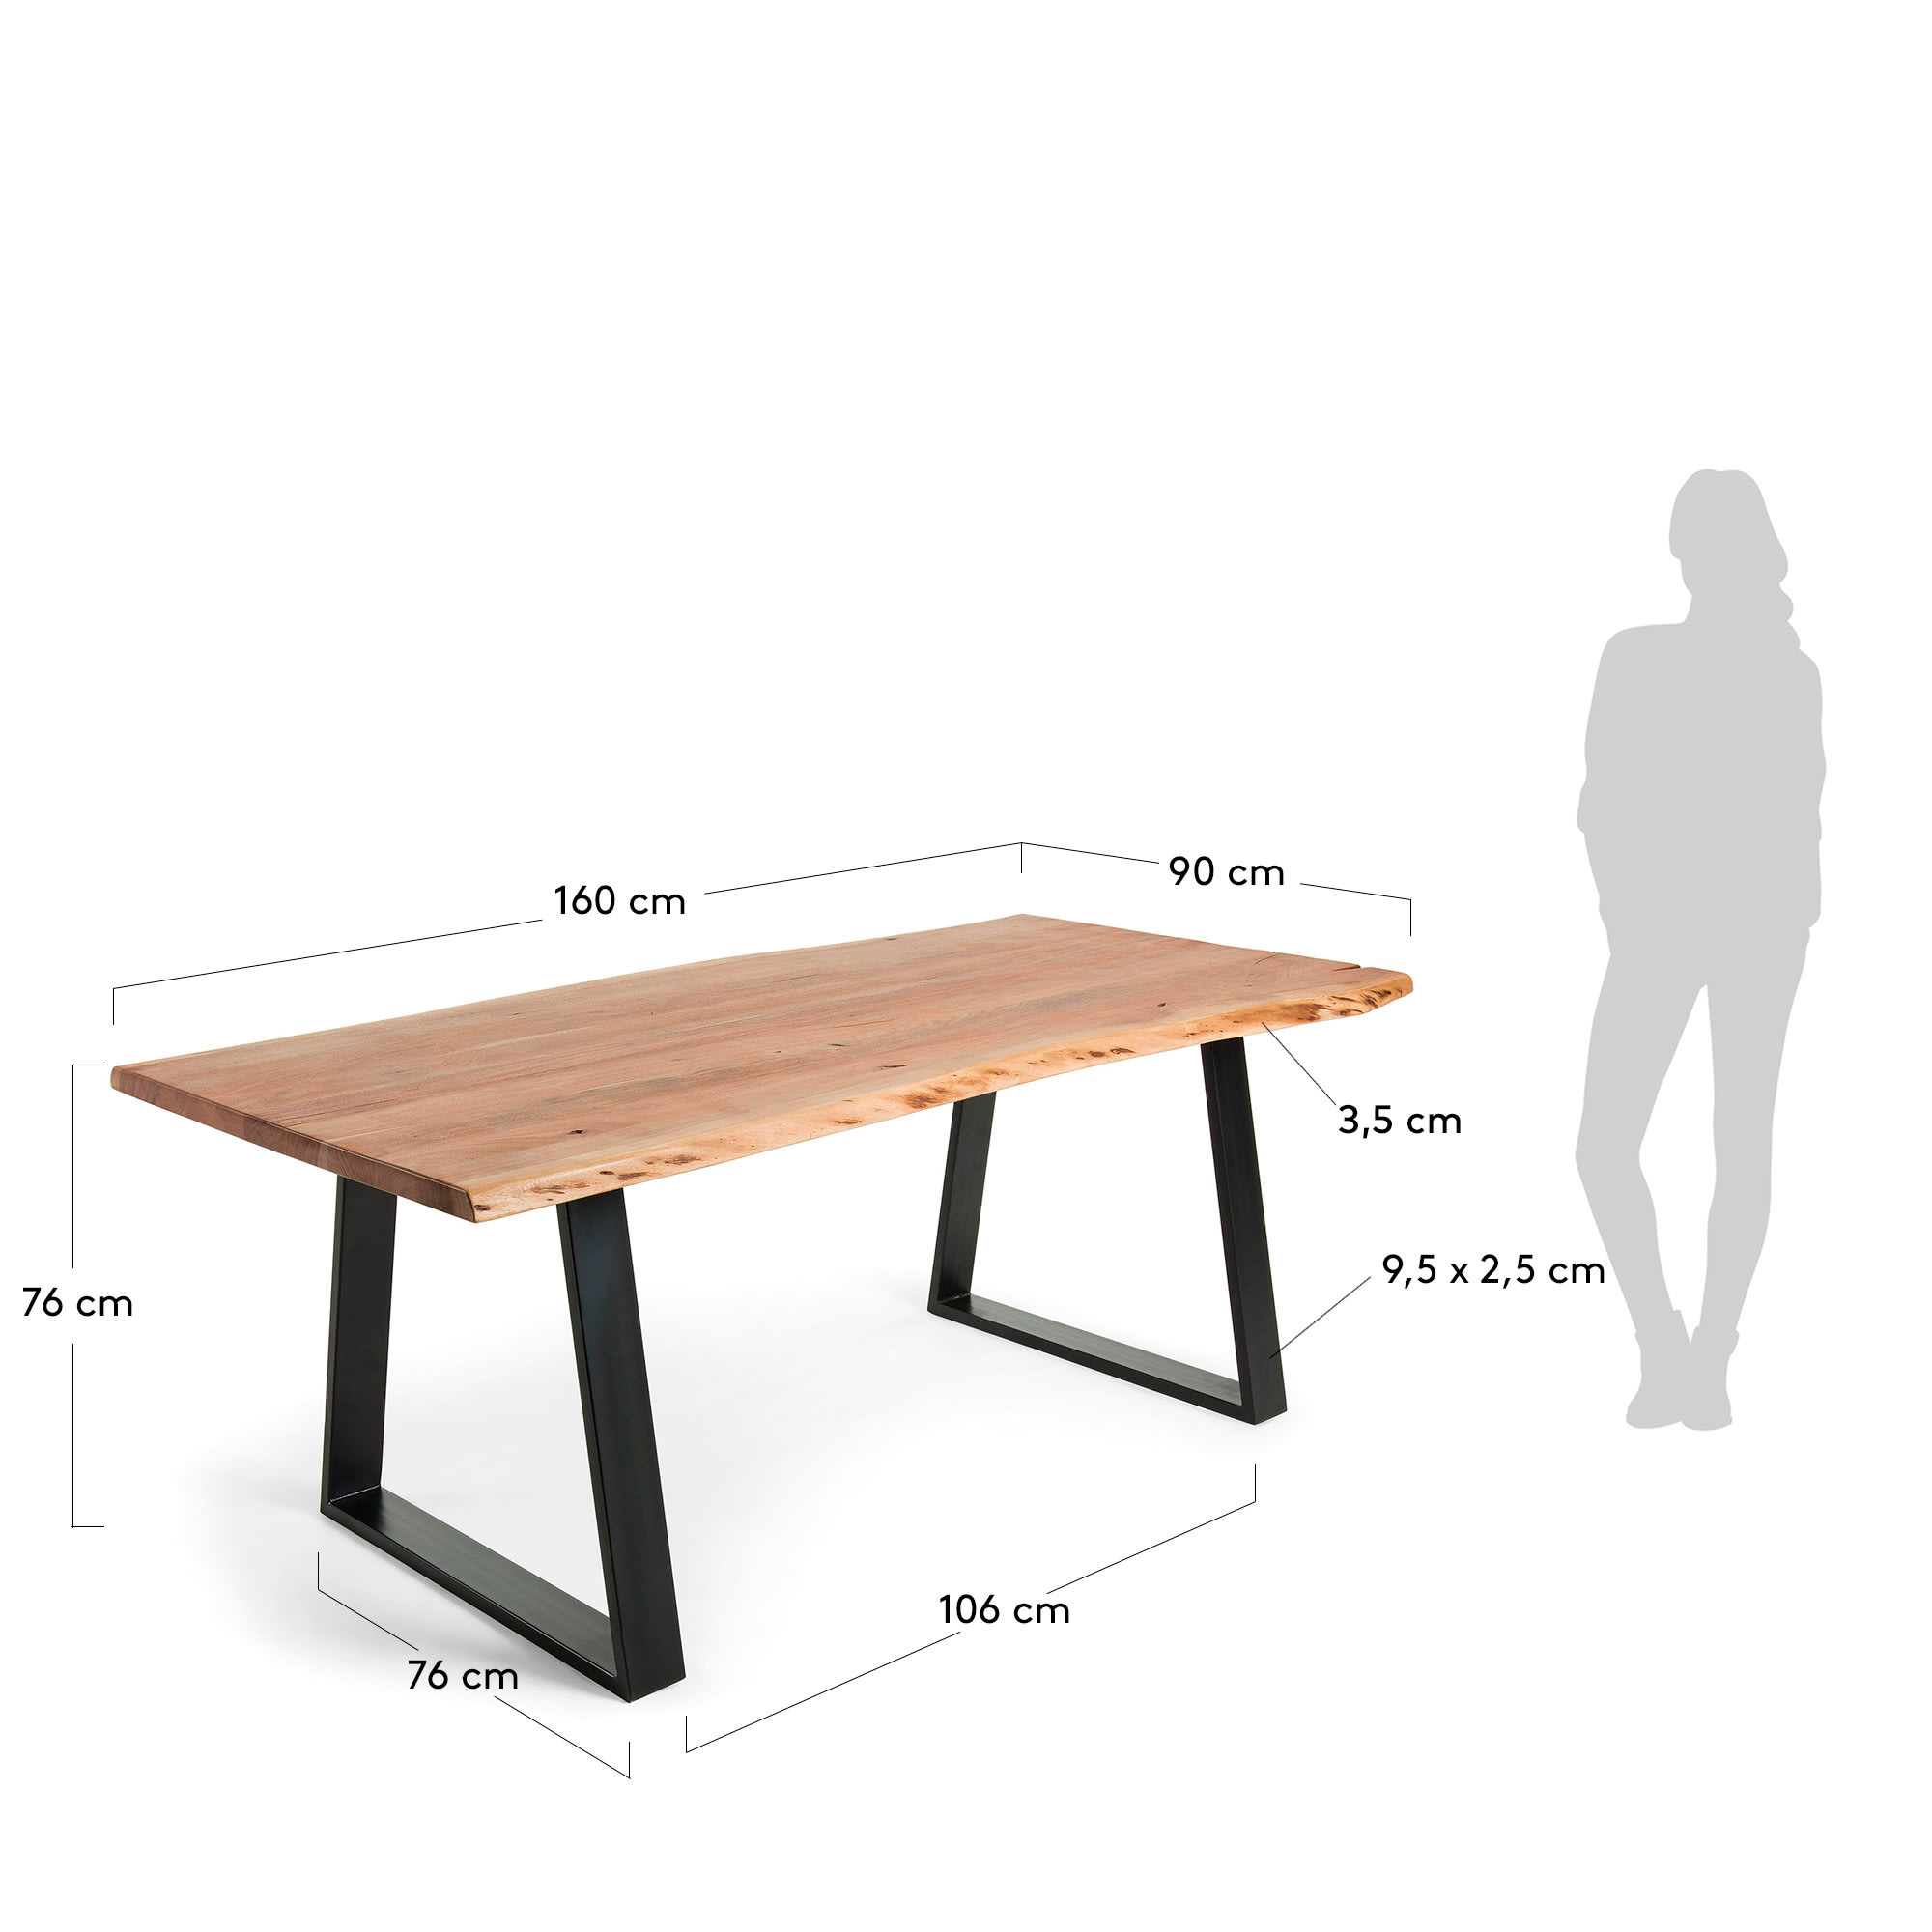 엘리아 아카시아 원목 네츄럴 다이닝 테이블 160x90cm - 크기